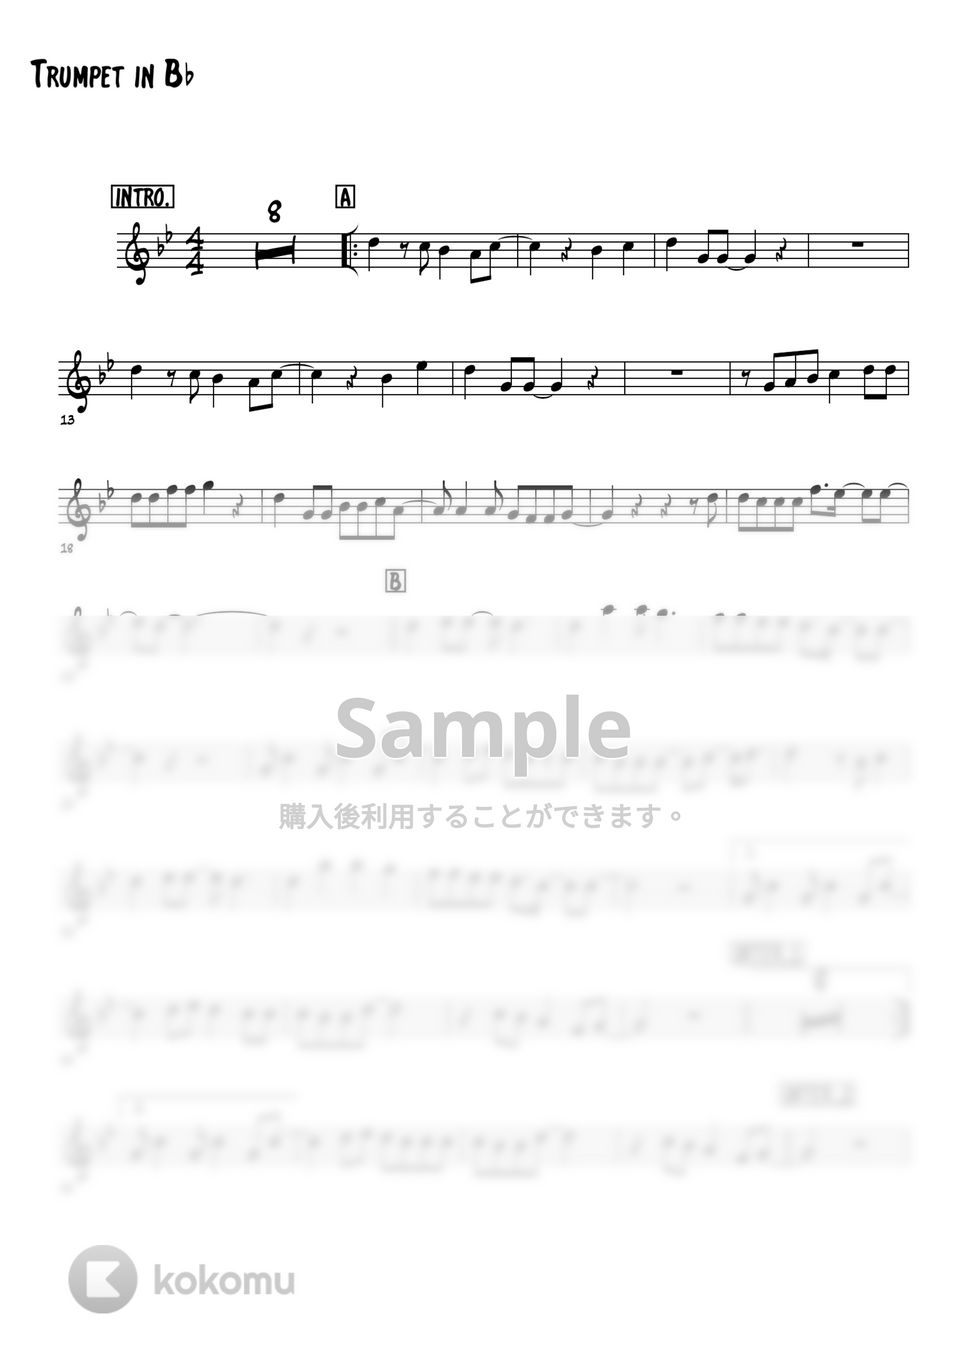 安全地帯 玉置浩二 - ワインレッドの心 (トランペットメロディー楽譜) by 高田将利